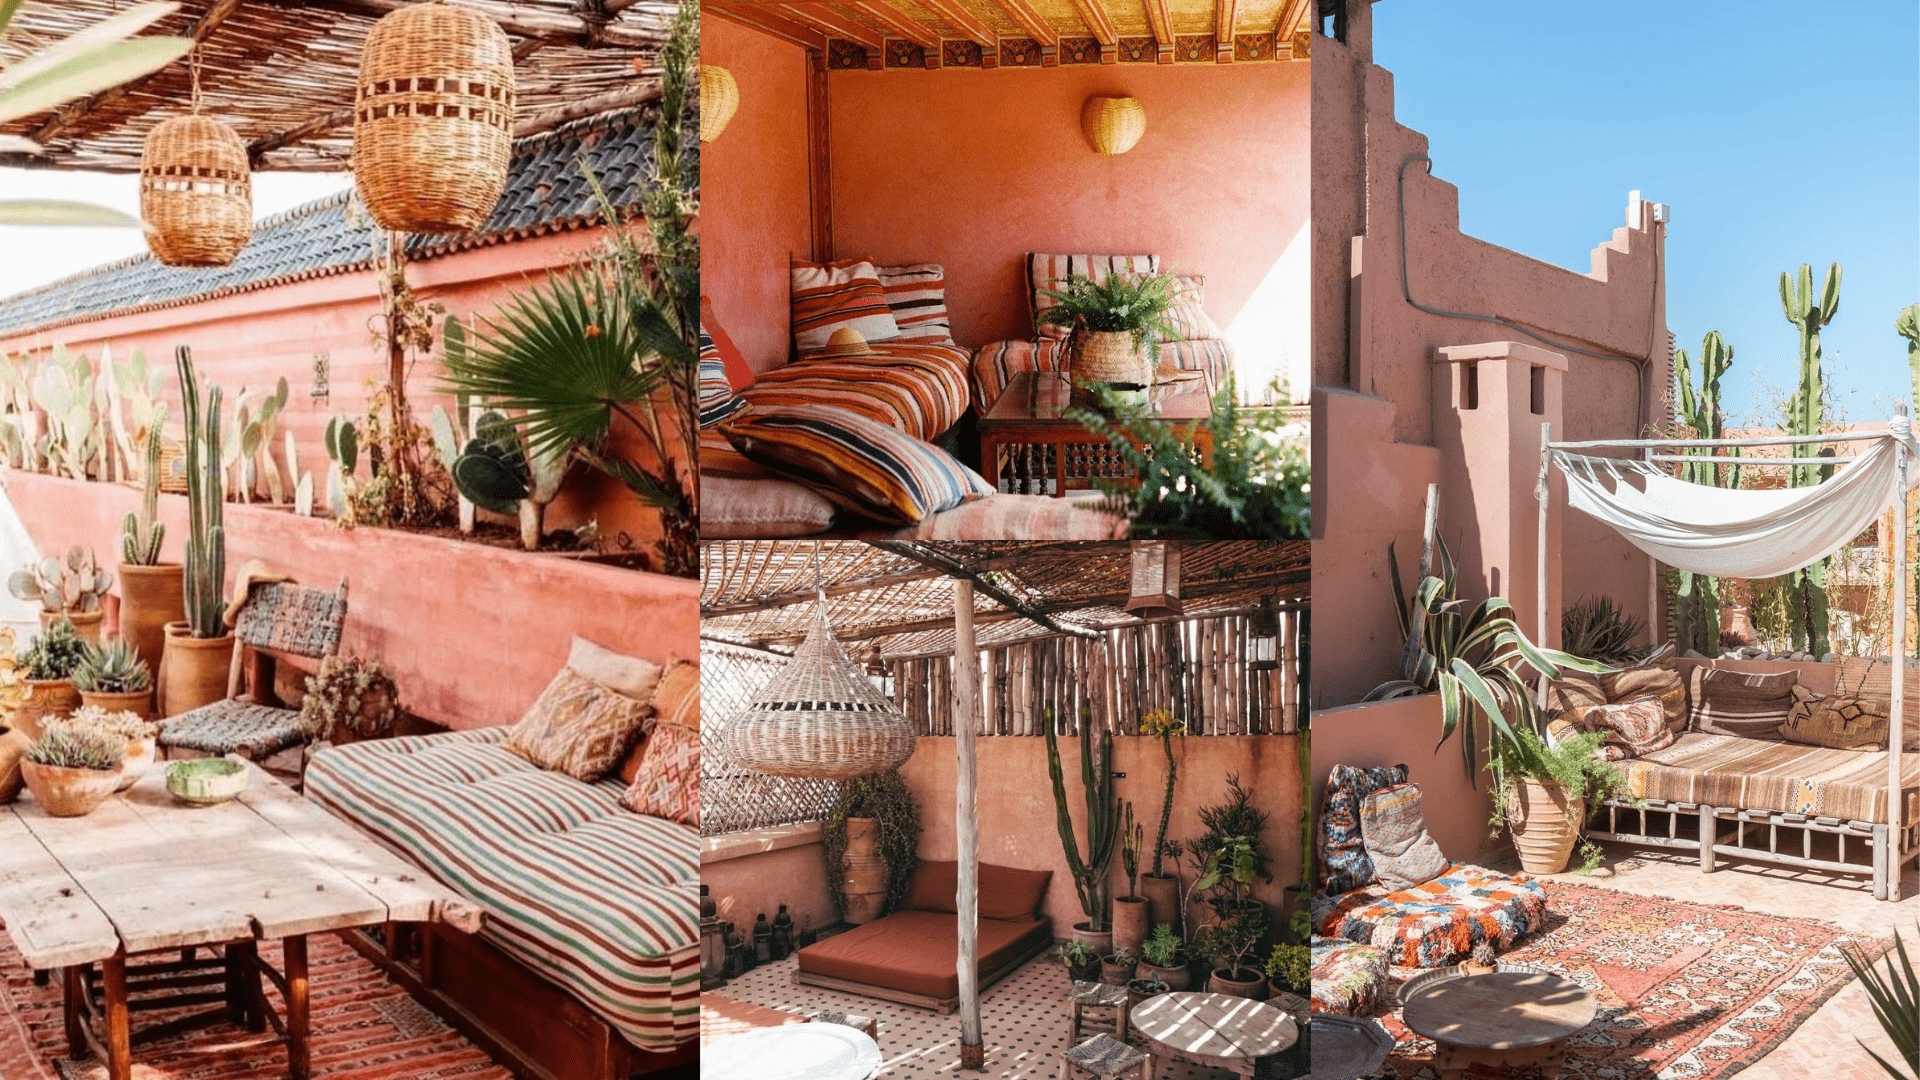 Salon de jardin marocain